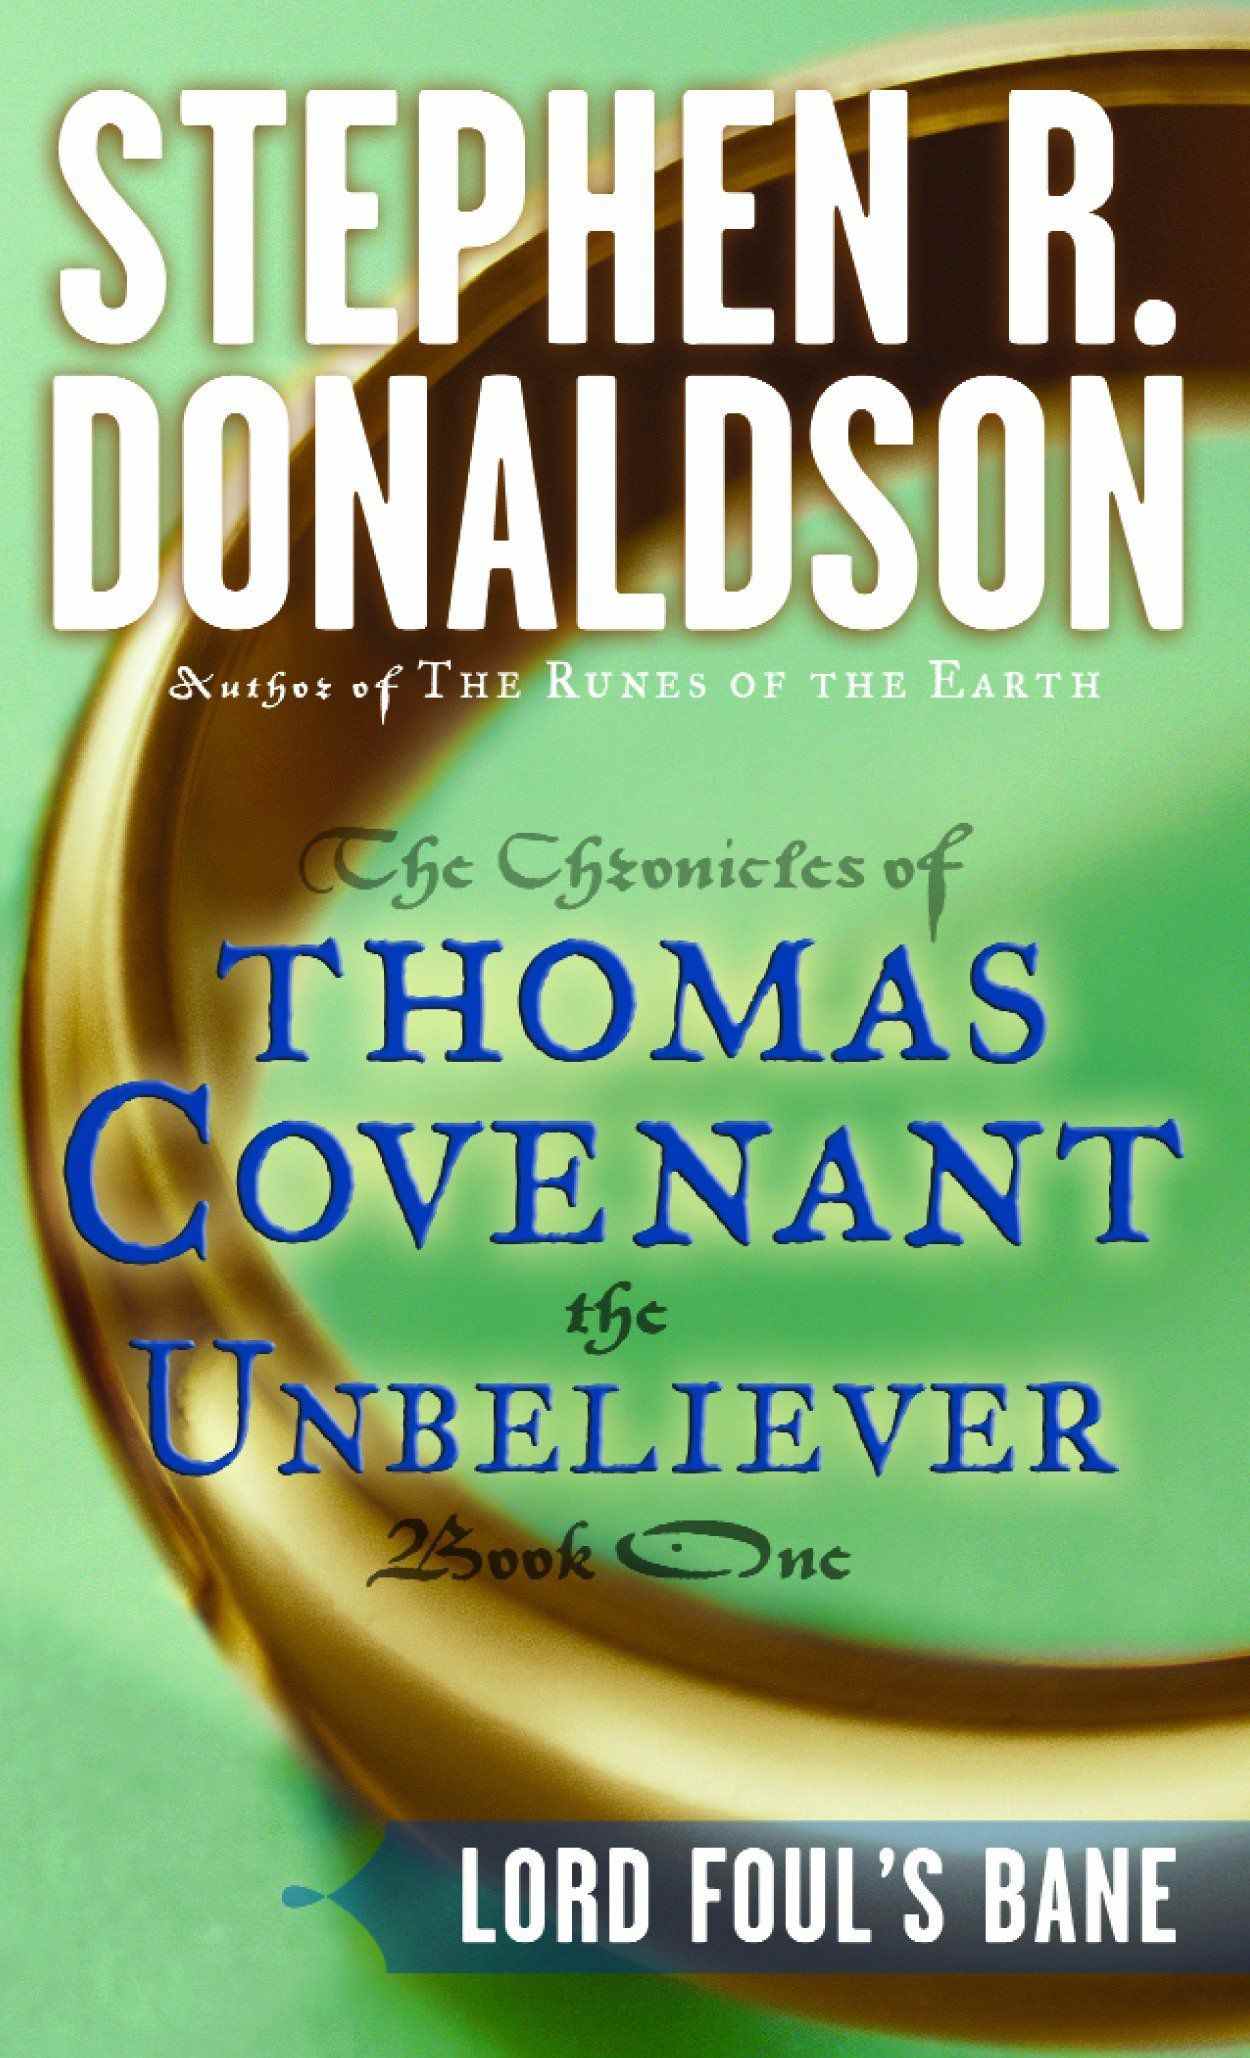 Lord Foul's Bane the Chronicles of Thomas Covenant the Unbeliever couverture du livre par Stephen Donaldson